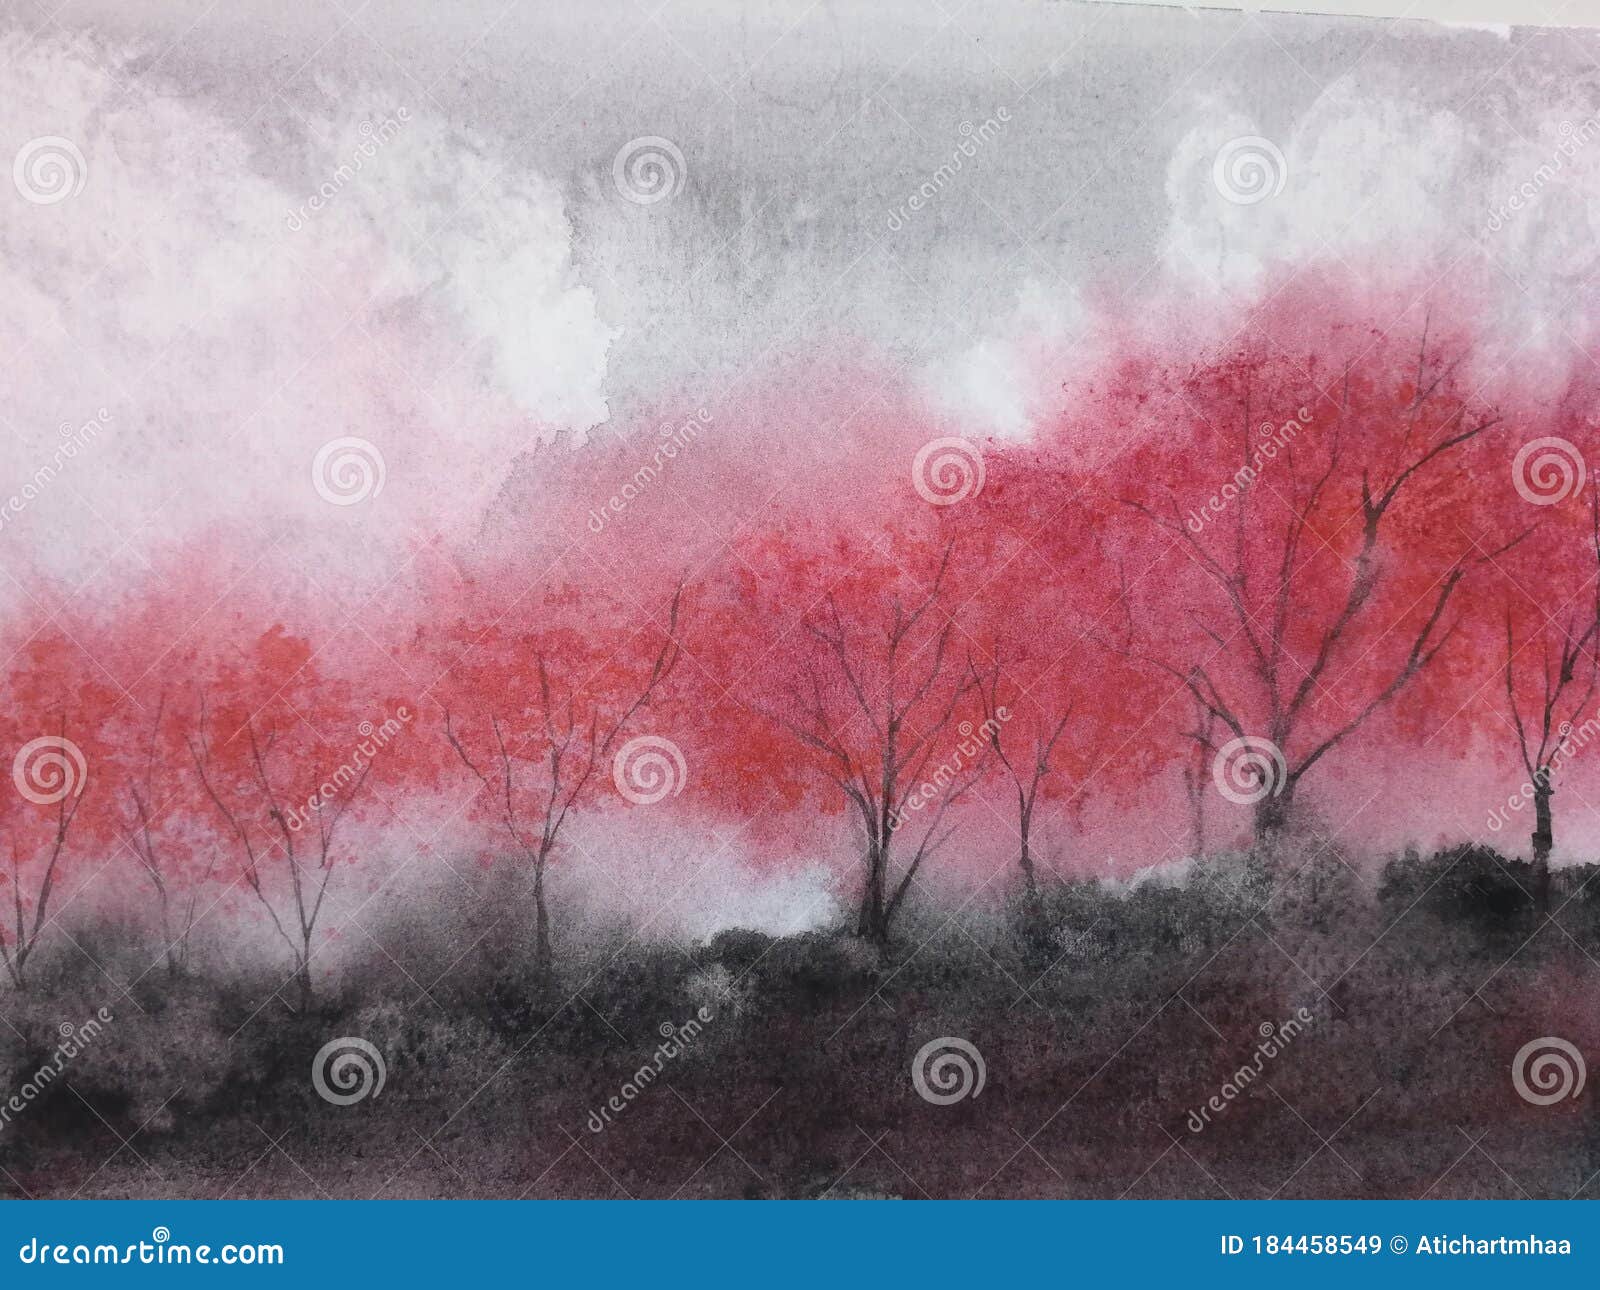 watercolor landscape mountain fog maple tree